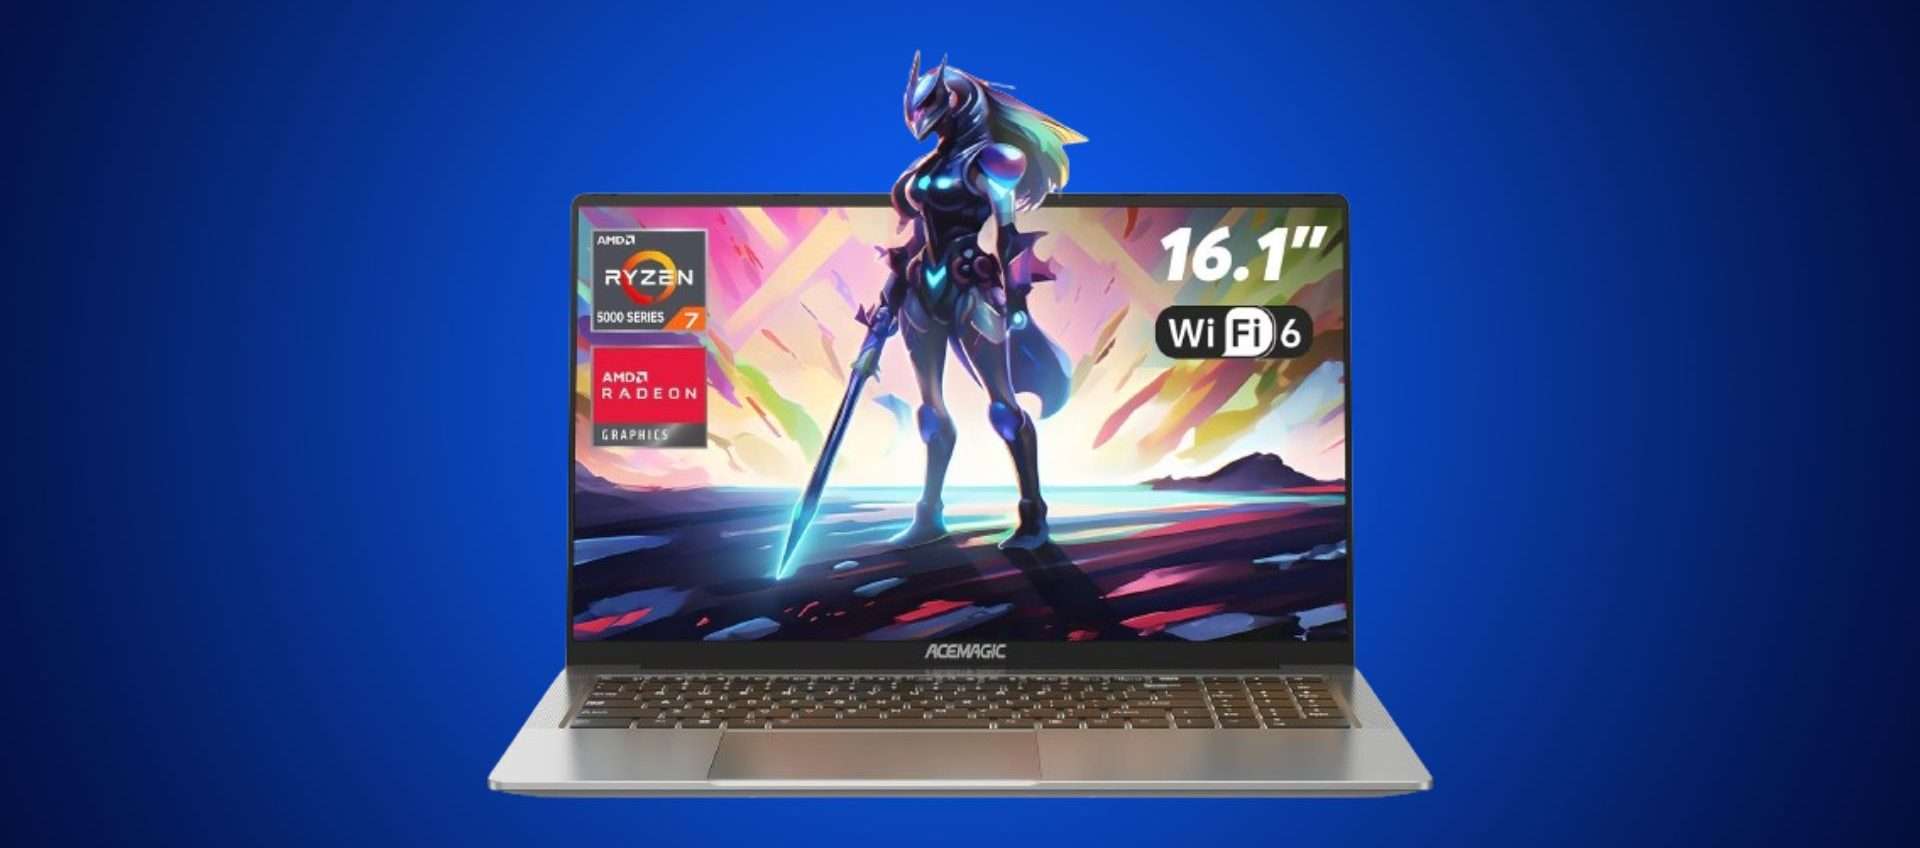 Laptop da gaming a meno di 500€?! Sì, con questa OFFERTA LEGGENDARIA di Amazon